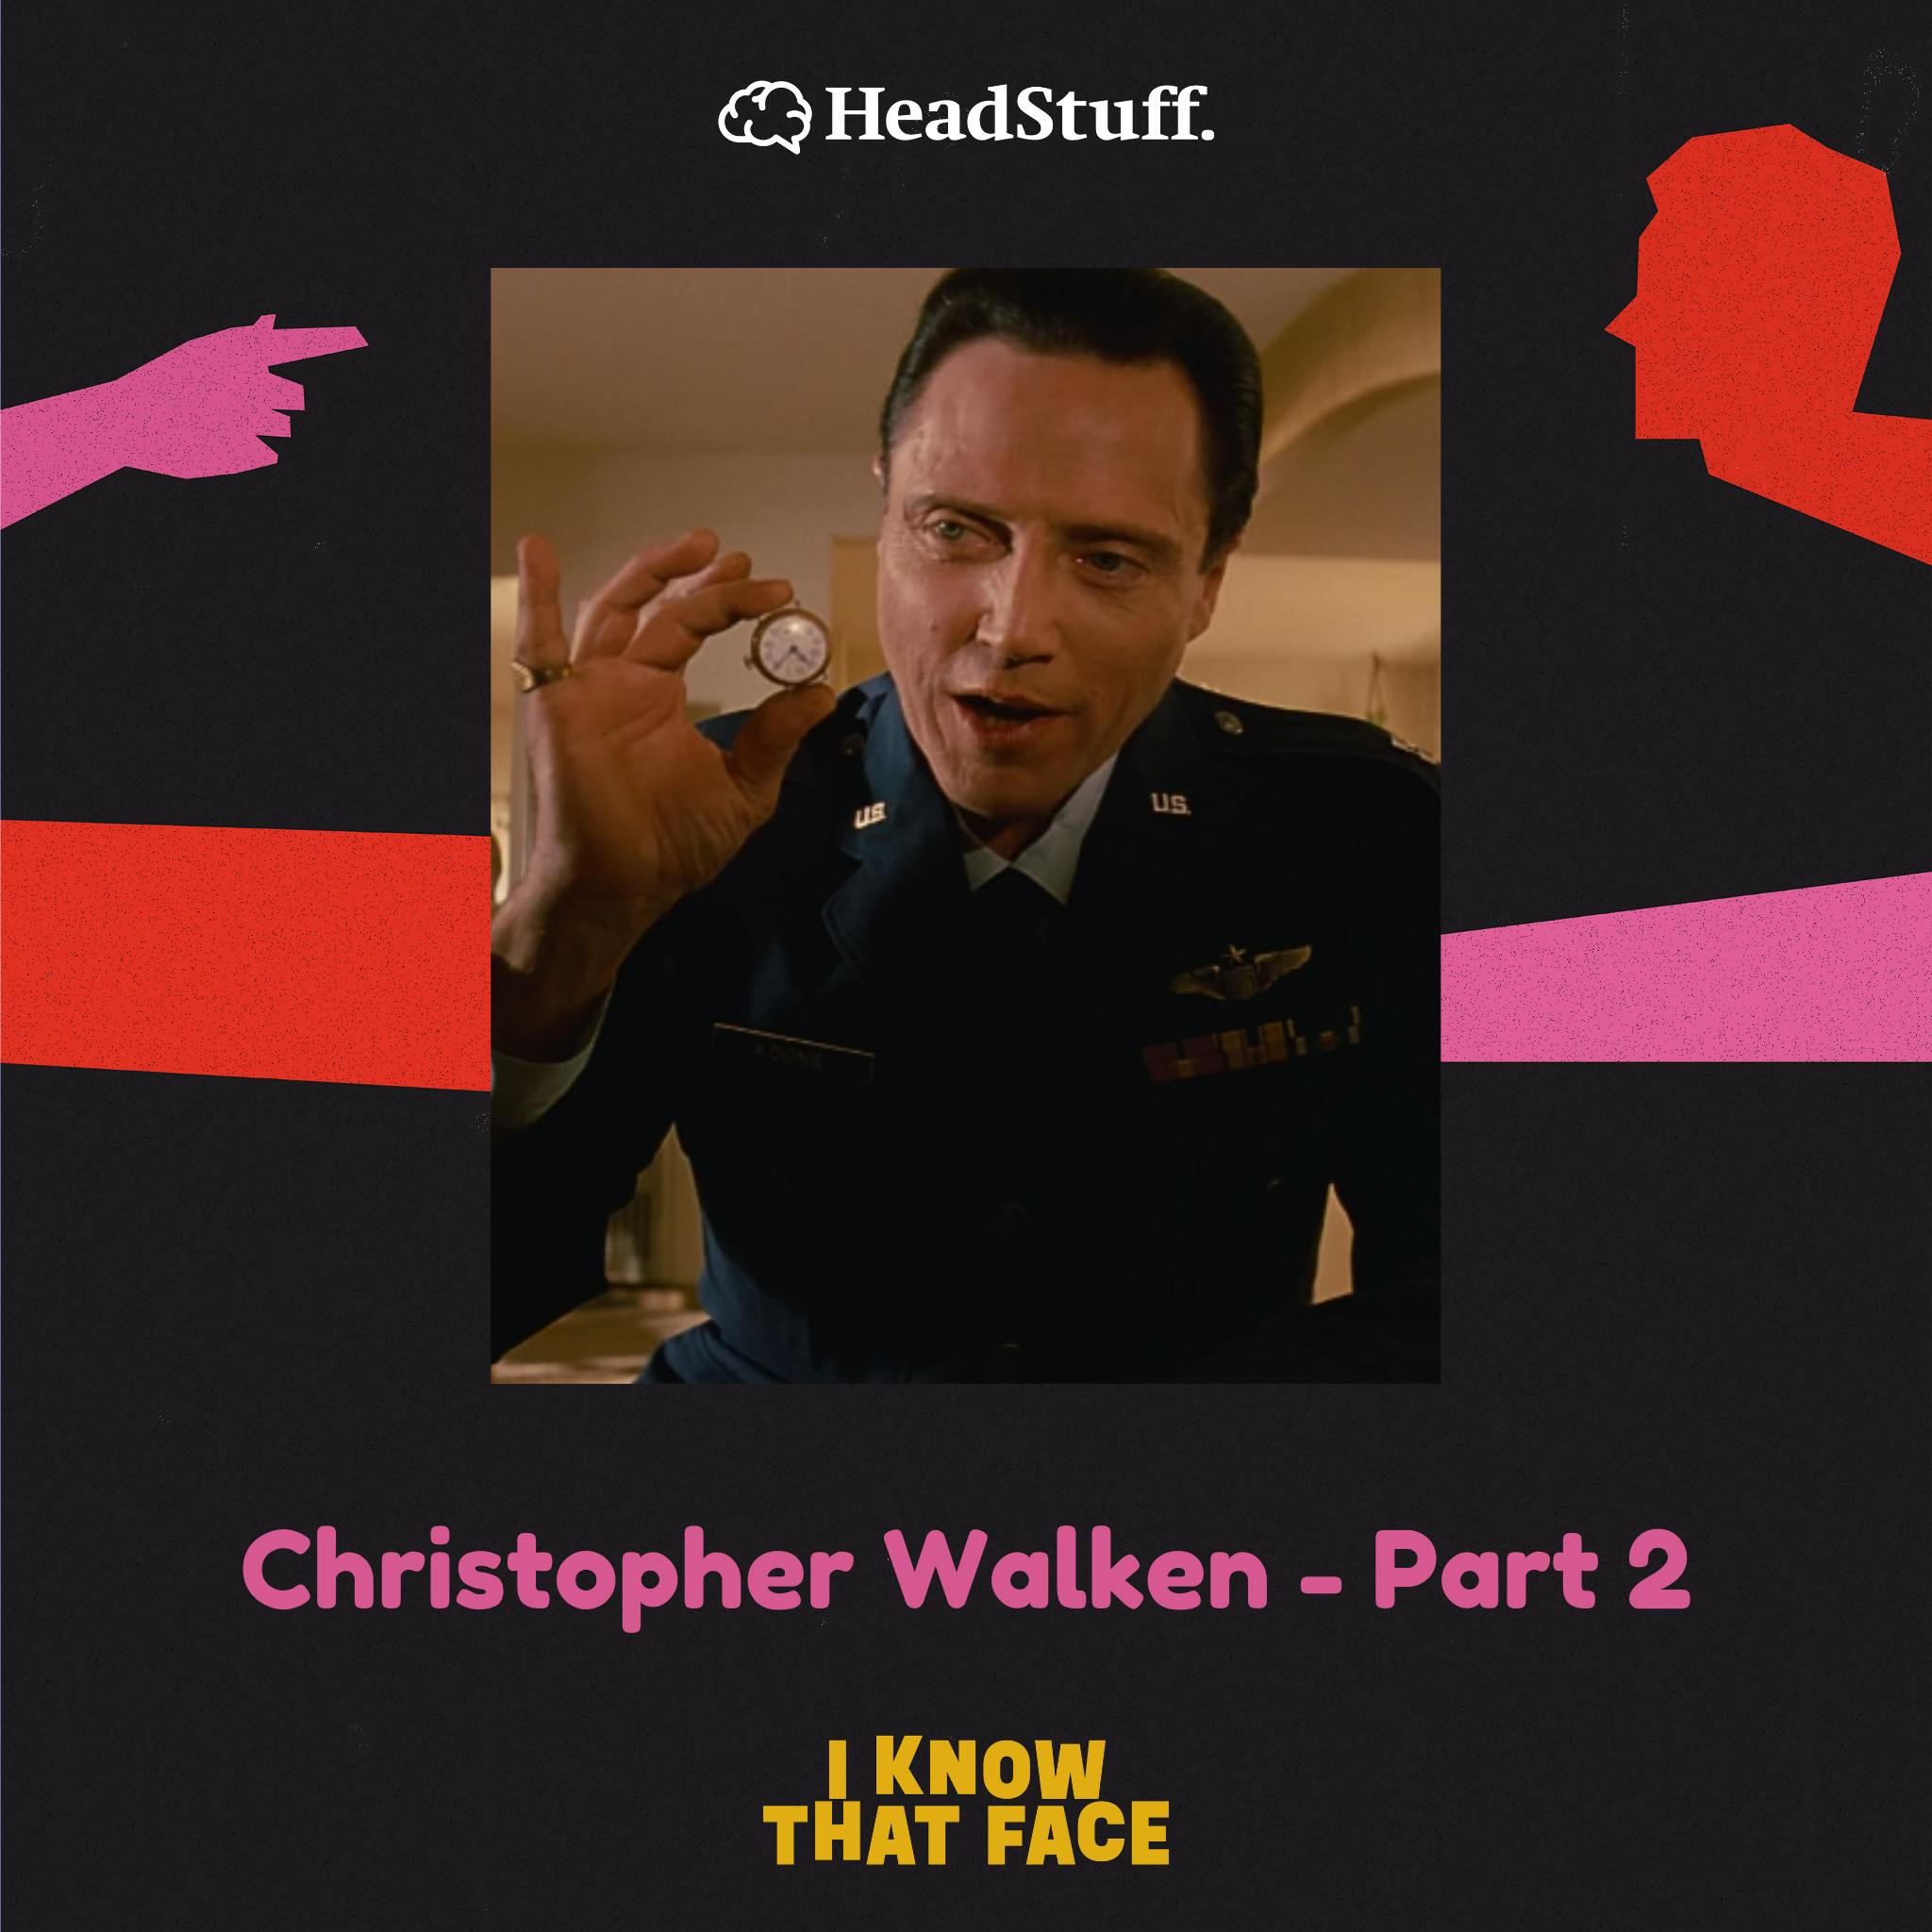 Christopher Walken - Part 2